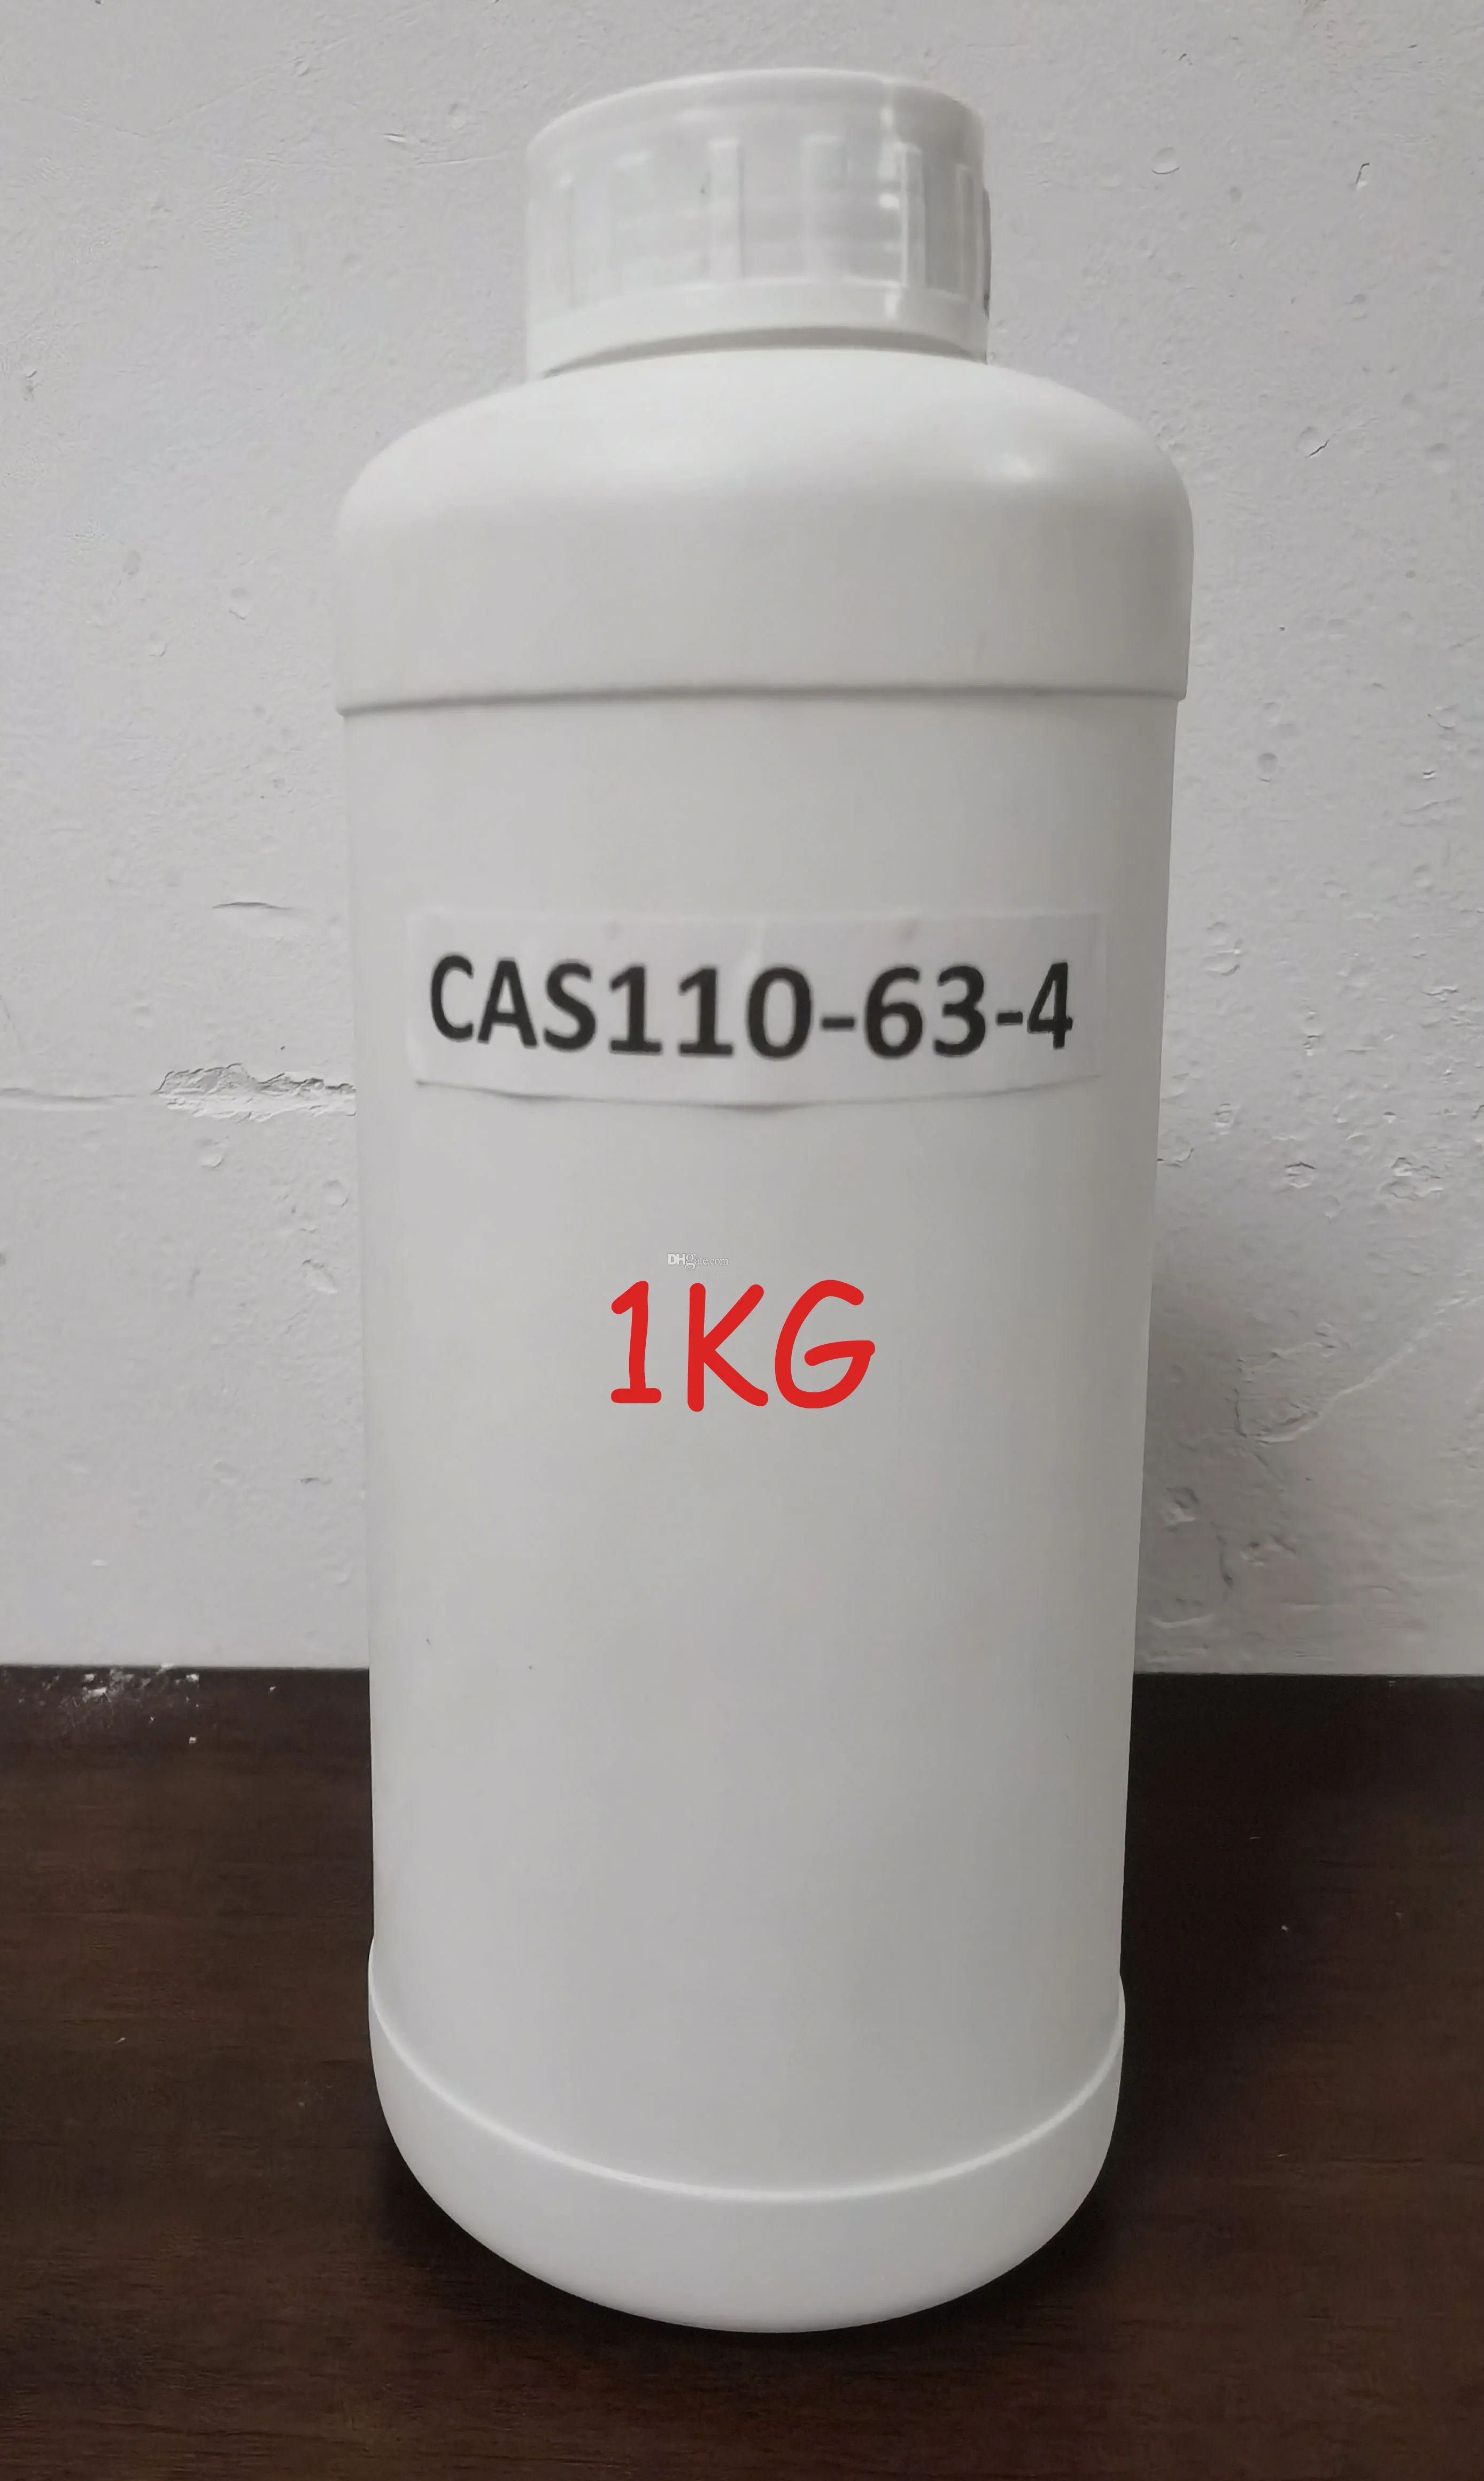 1 kg Cas110-63-4